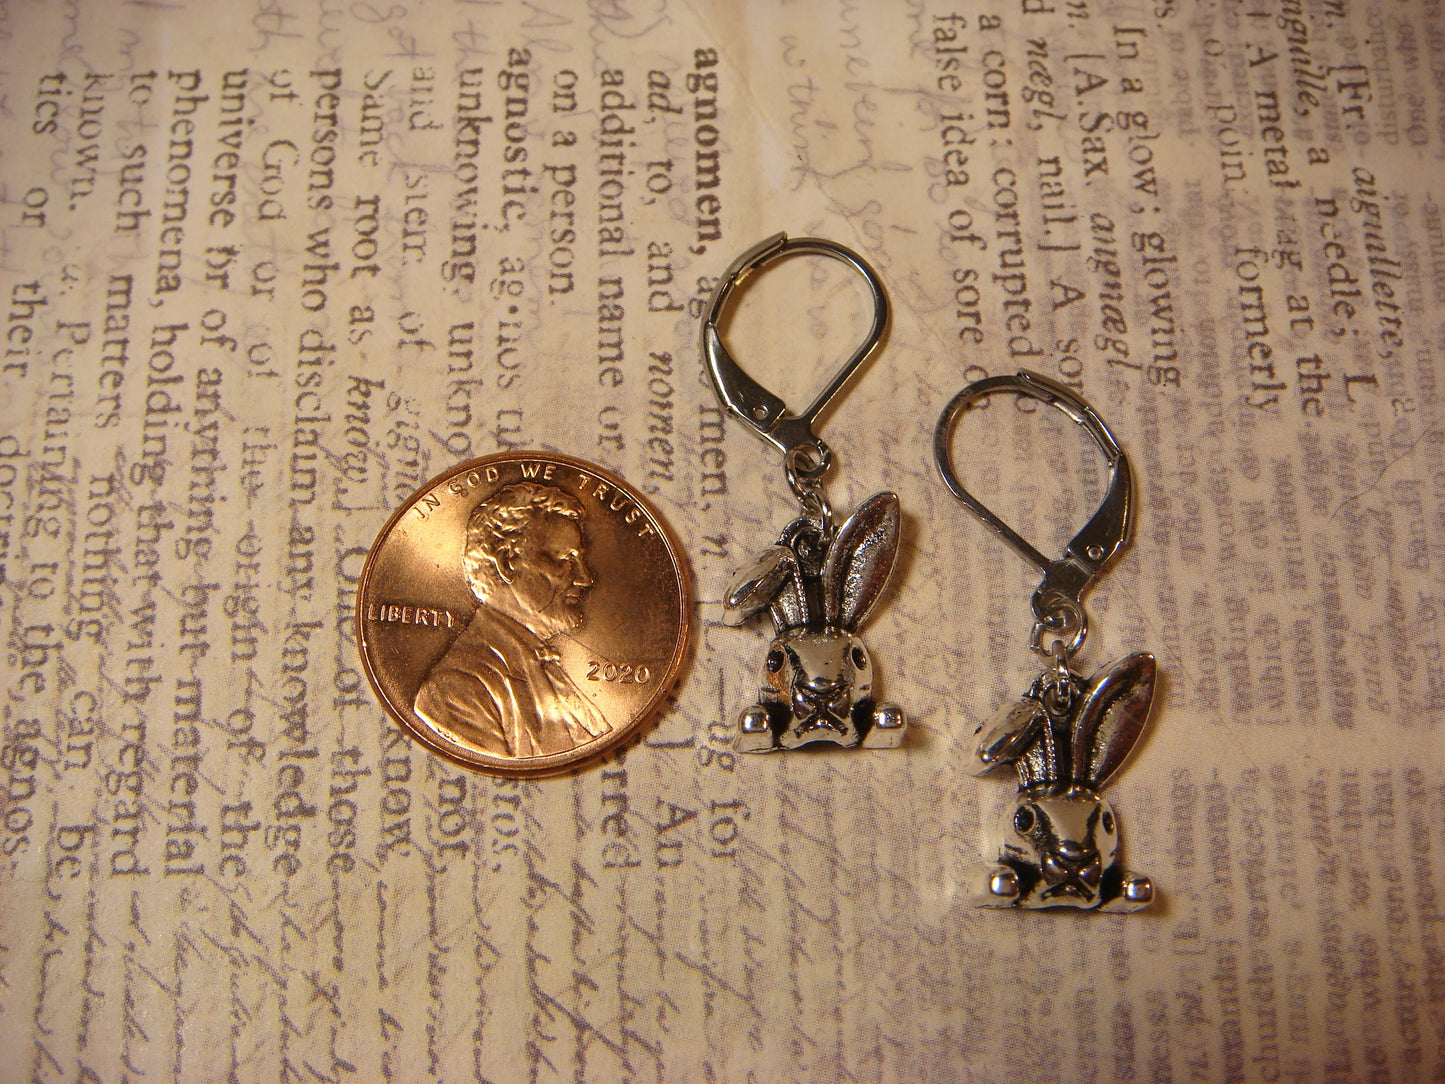 Bunny Rabbit Dangle Earrings in Antique Silver